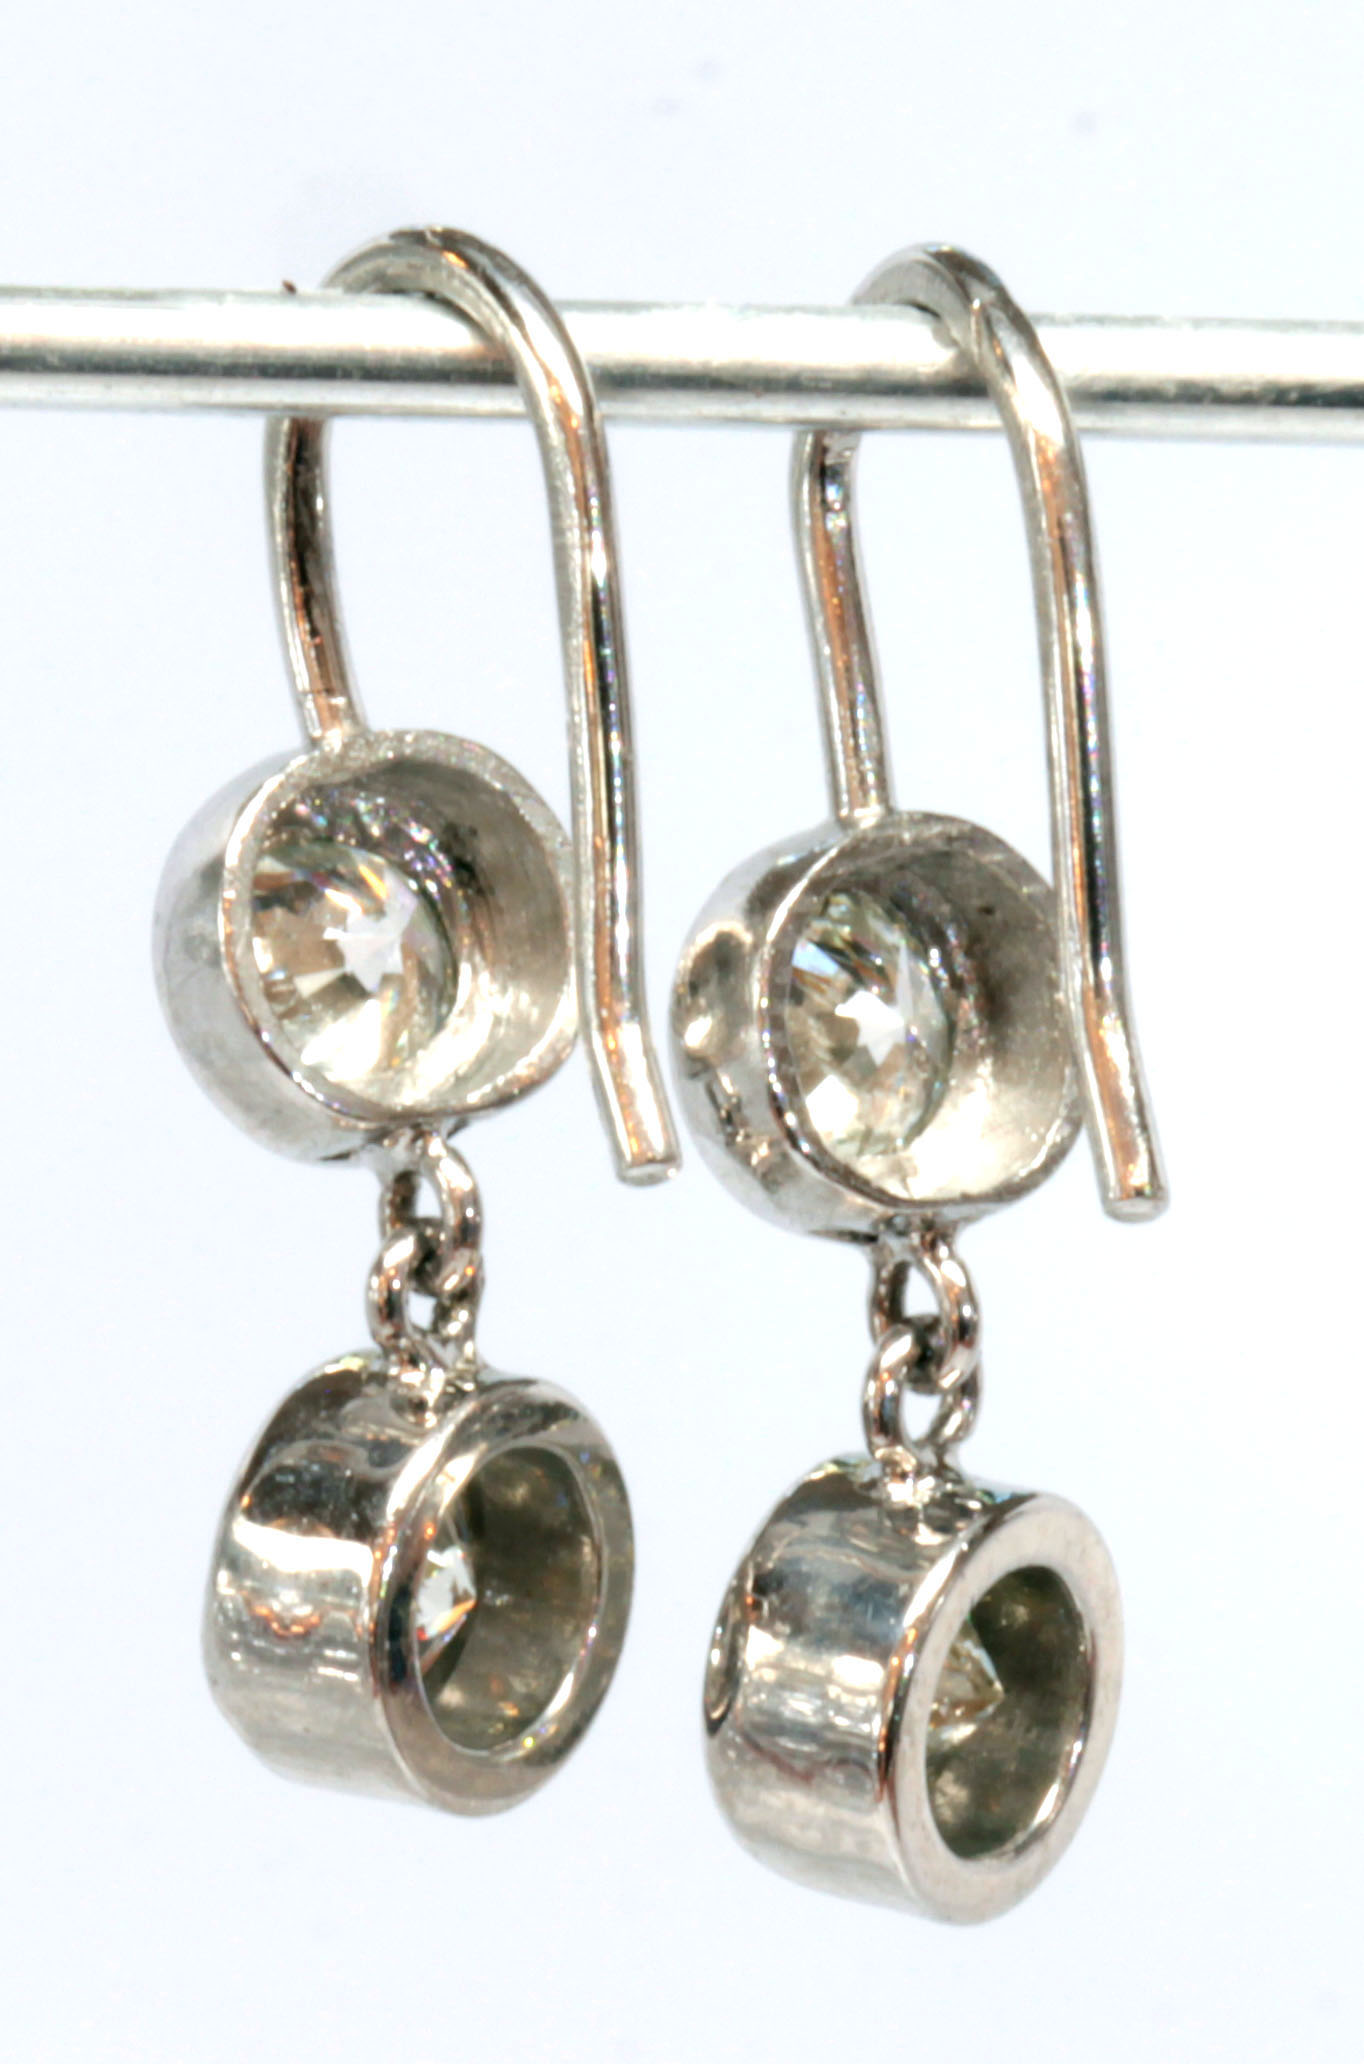 Pair of diamond, platinum, 14k white gold earrings - Image 2 of 3